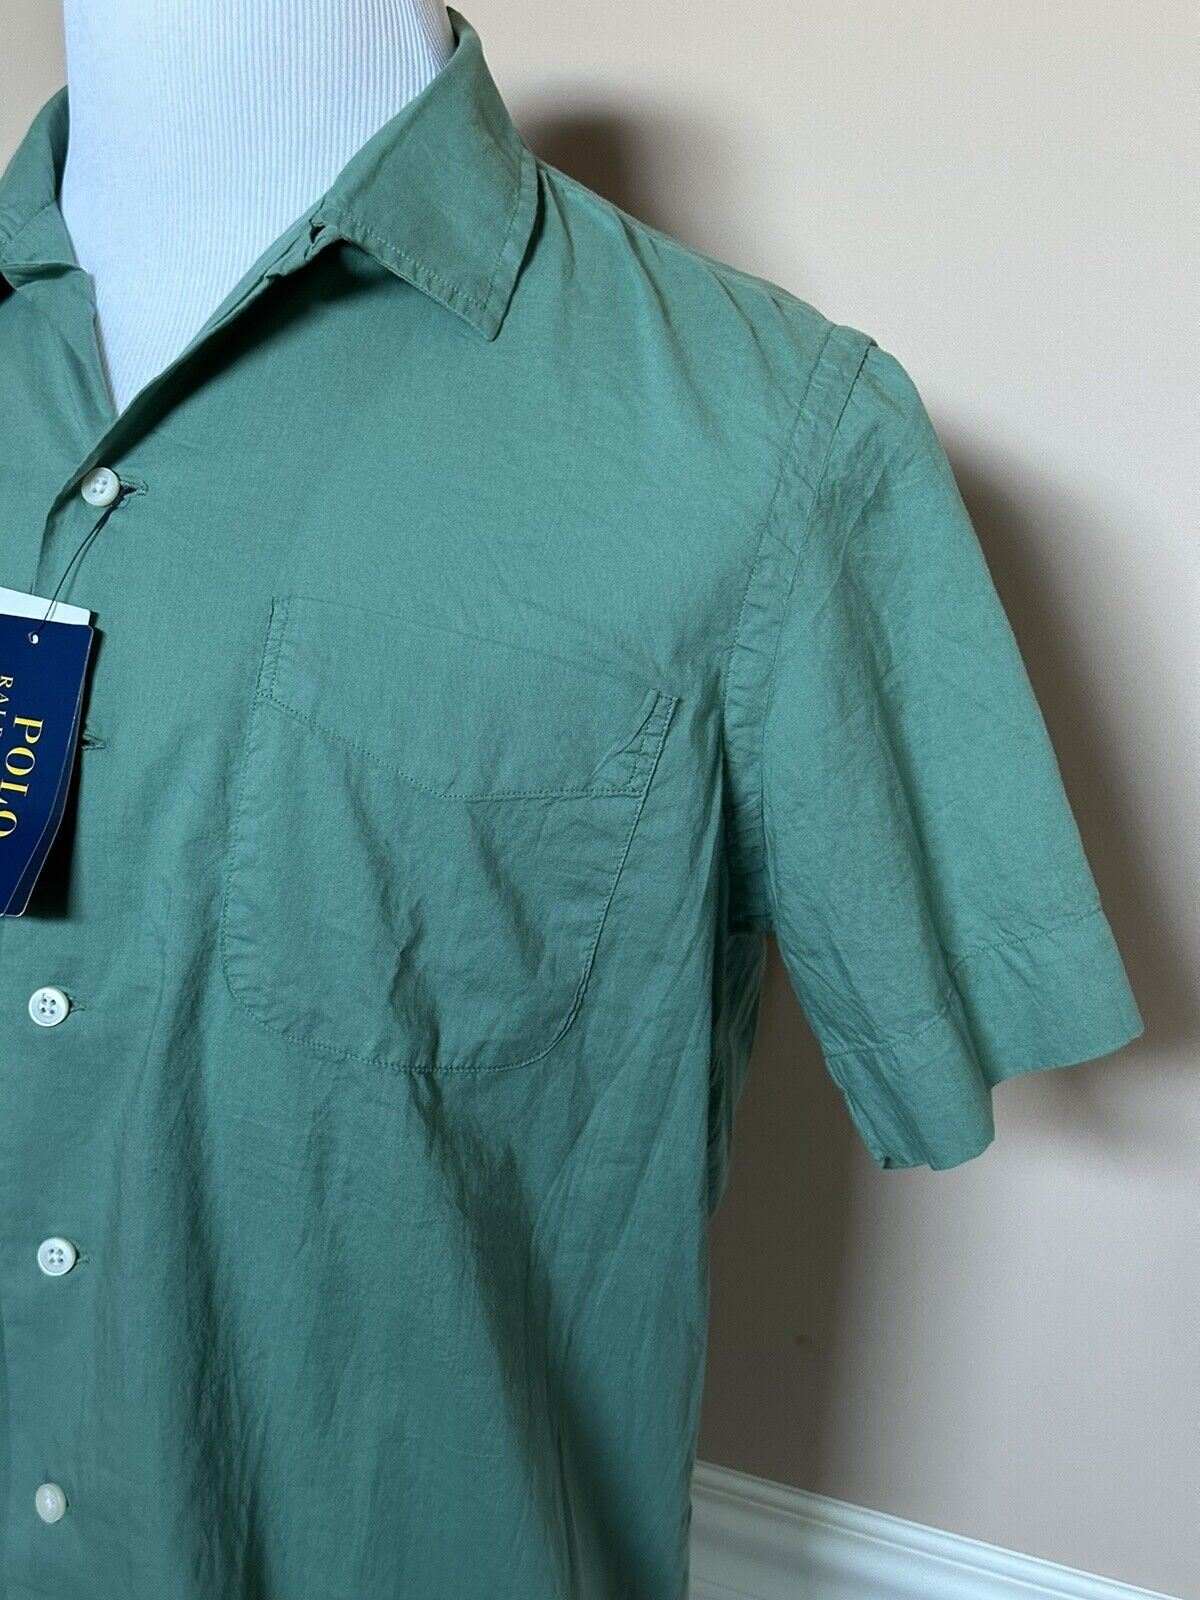 Мужская зеленая классическая рубашка с коротким рукавом NWT Polo Ralph Lauren 2XL, производство Индия